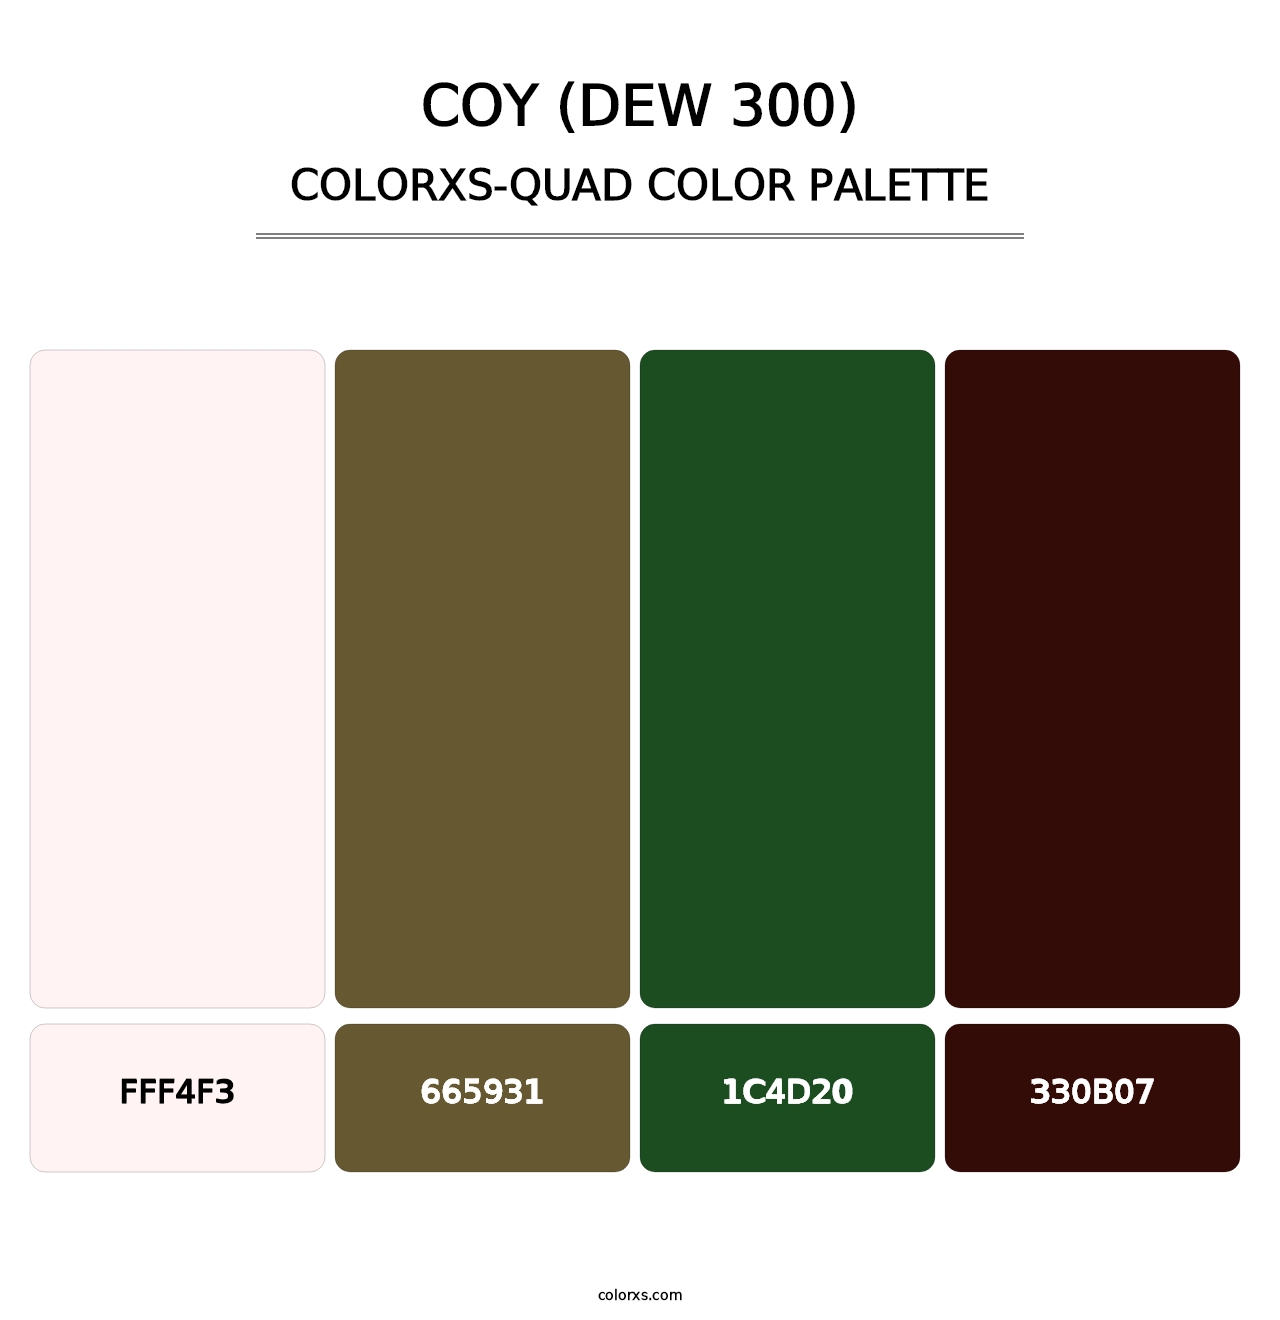 Coy (DEW 300) - Colorxs Quad Palette